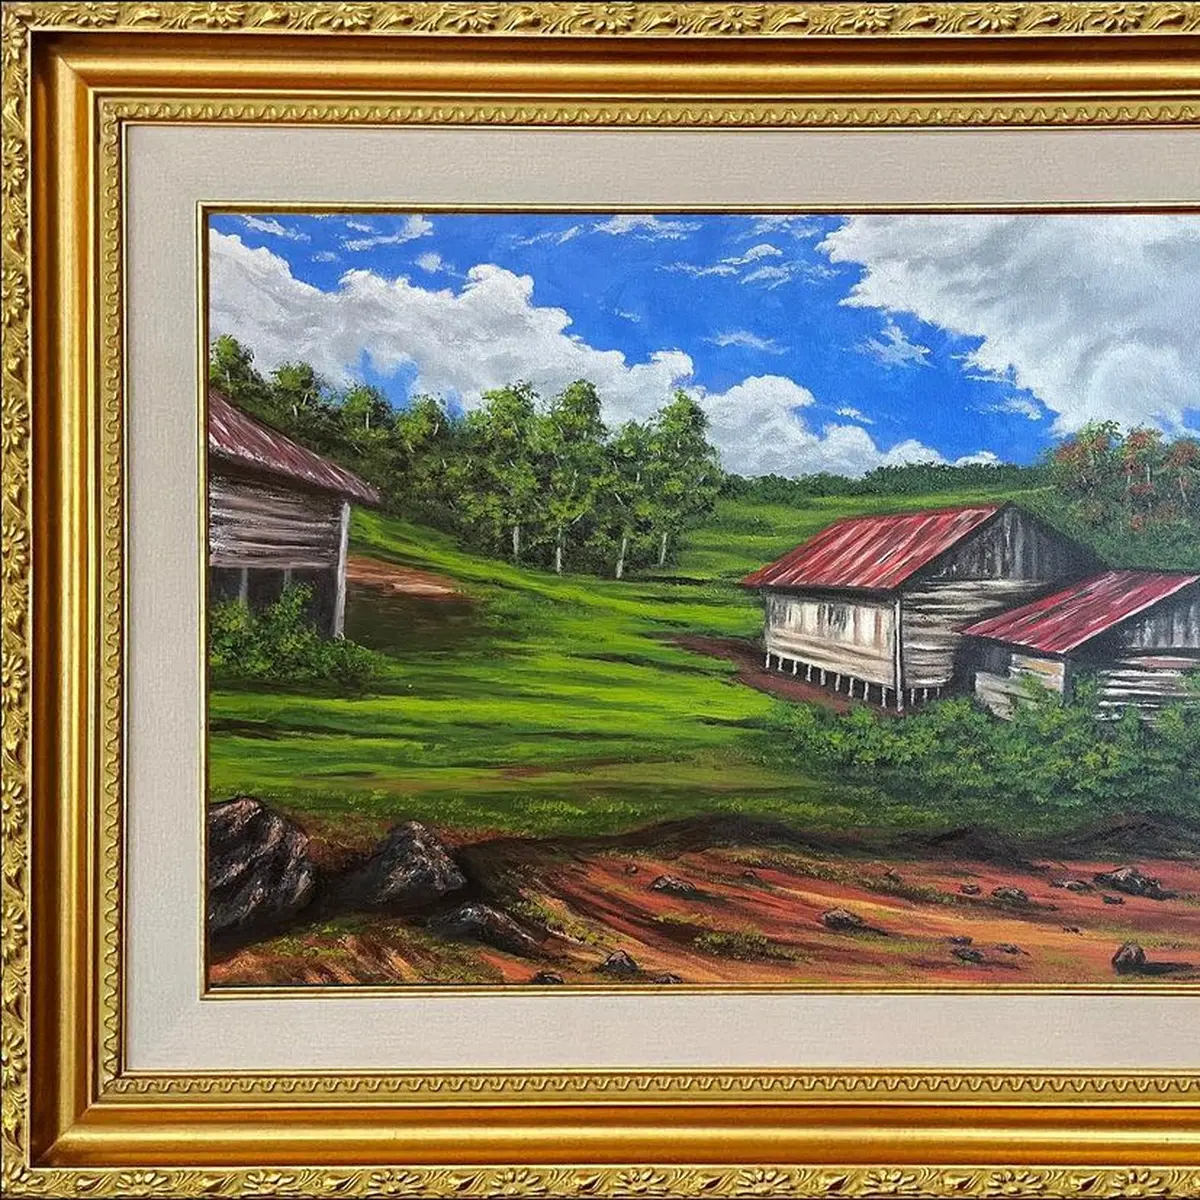 lukisan pemandangan kampung